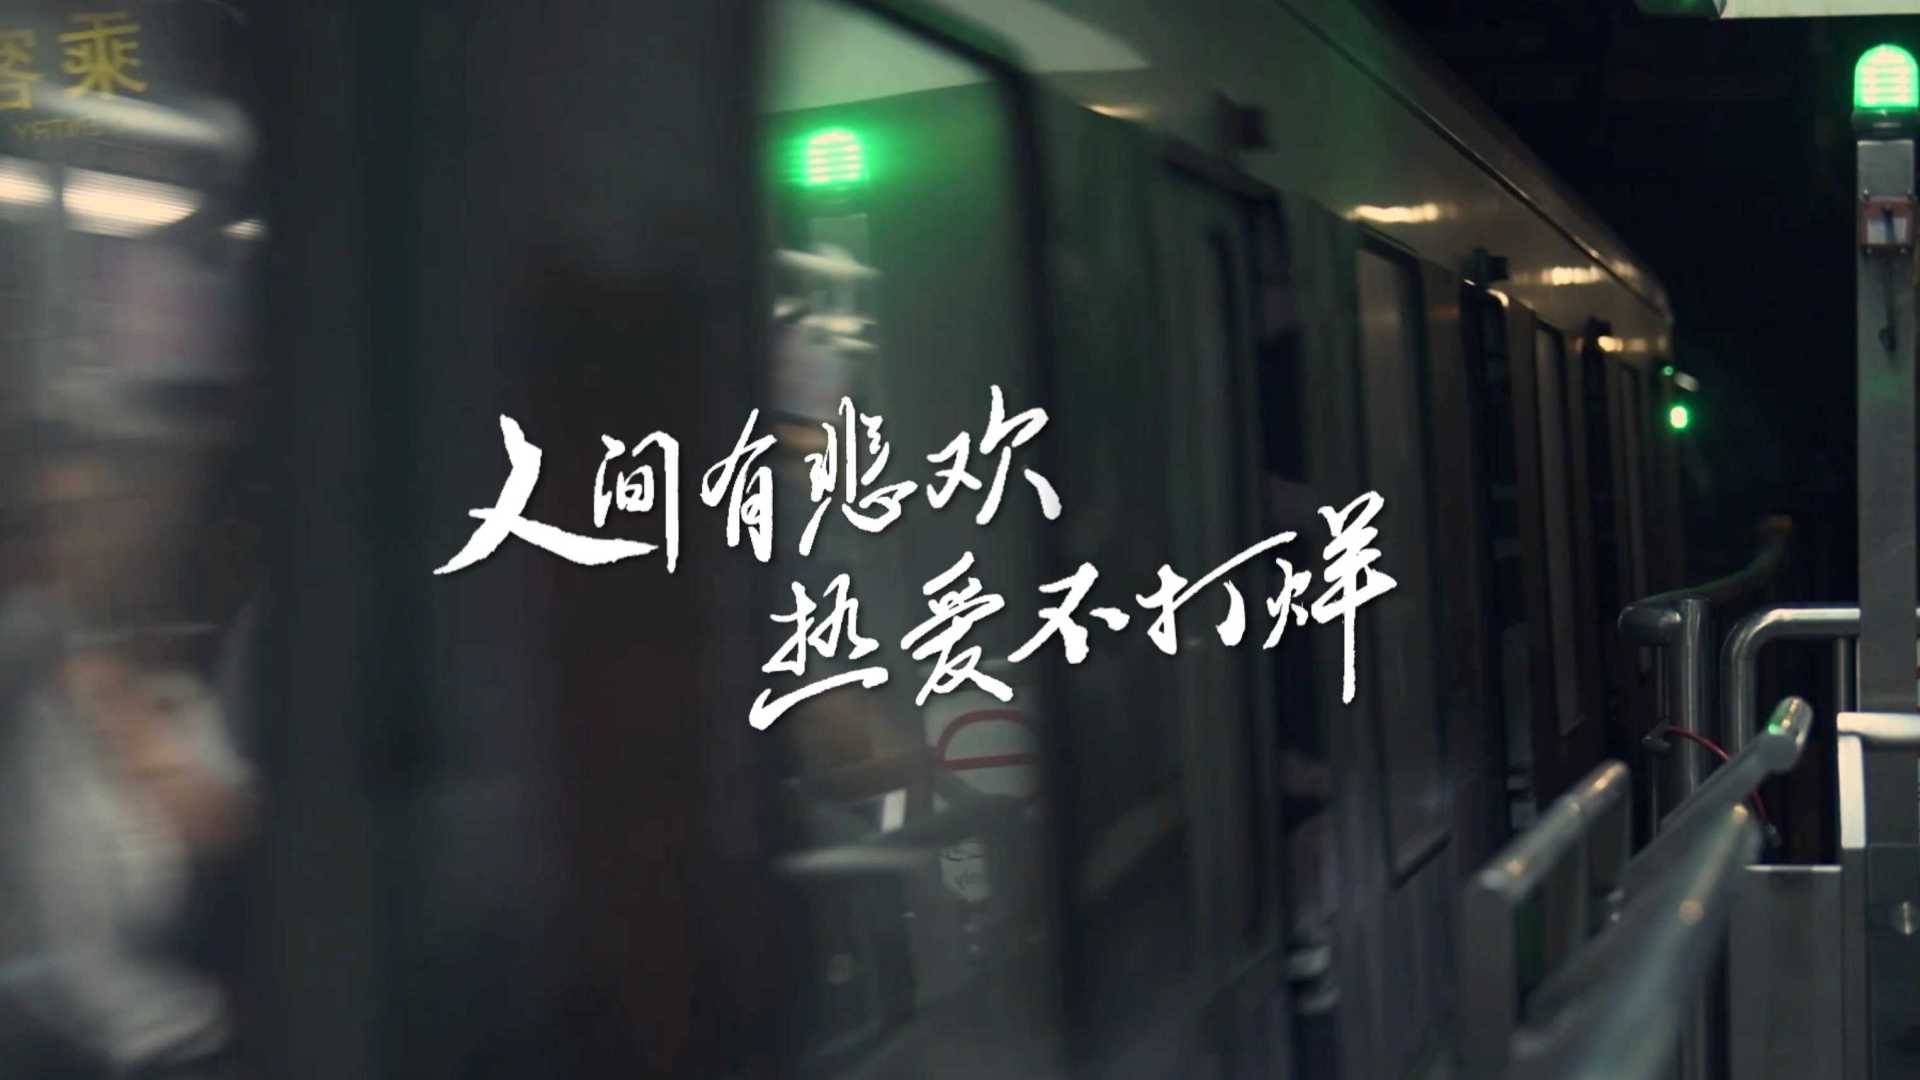 腾讯视频《最后一班地铁》系列纪实节目·第一季概念宣传片